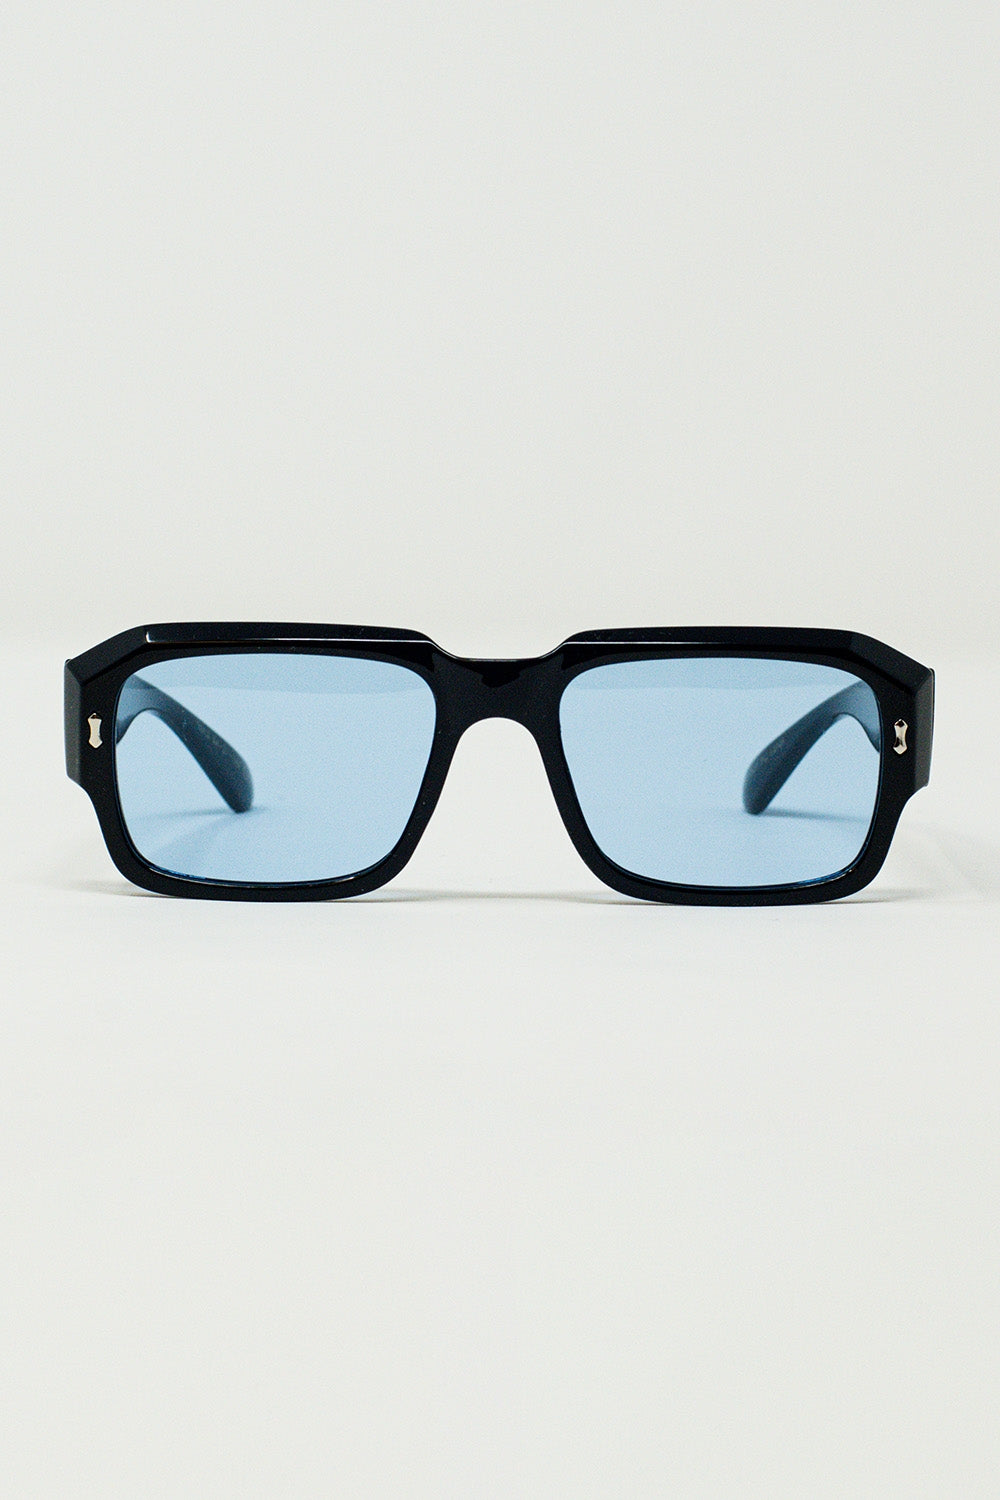 Q2 Rectangular Black Frame Sunglasses With Blue Lenses